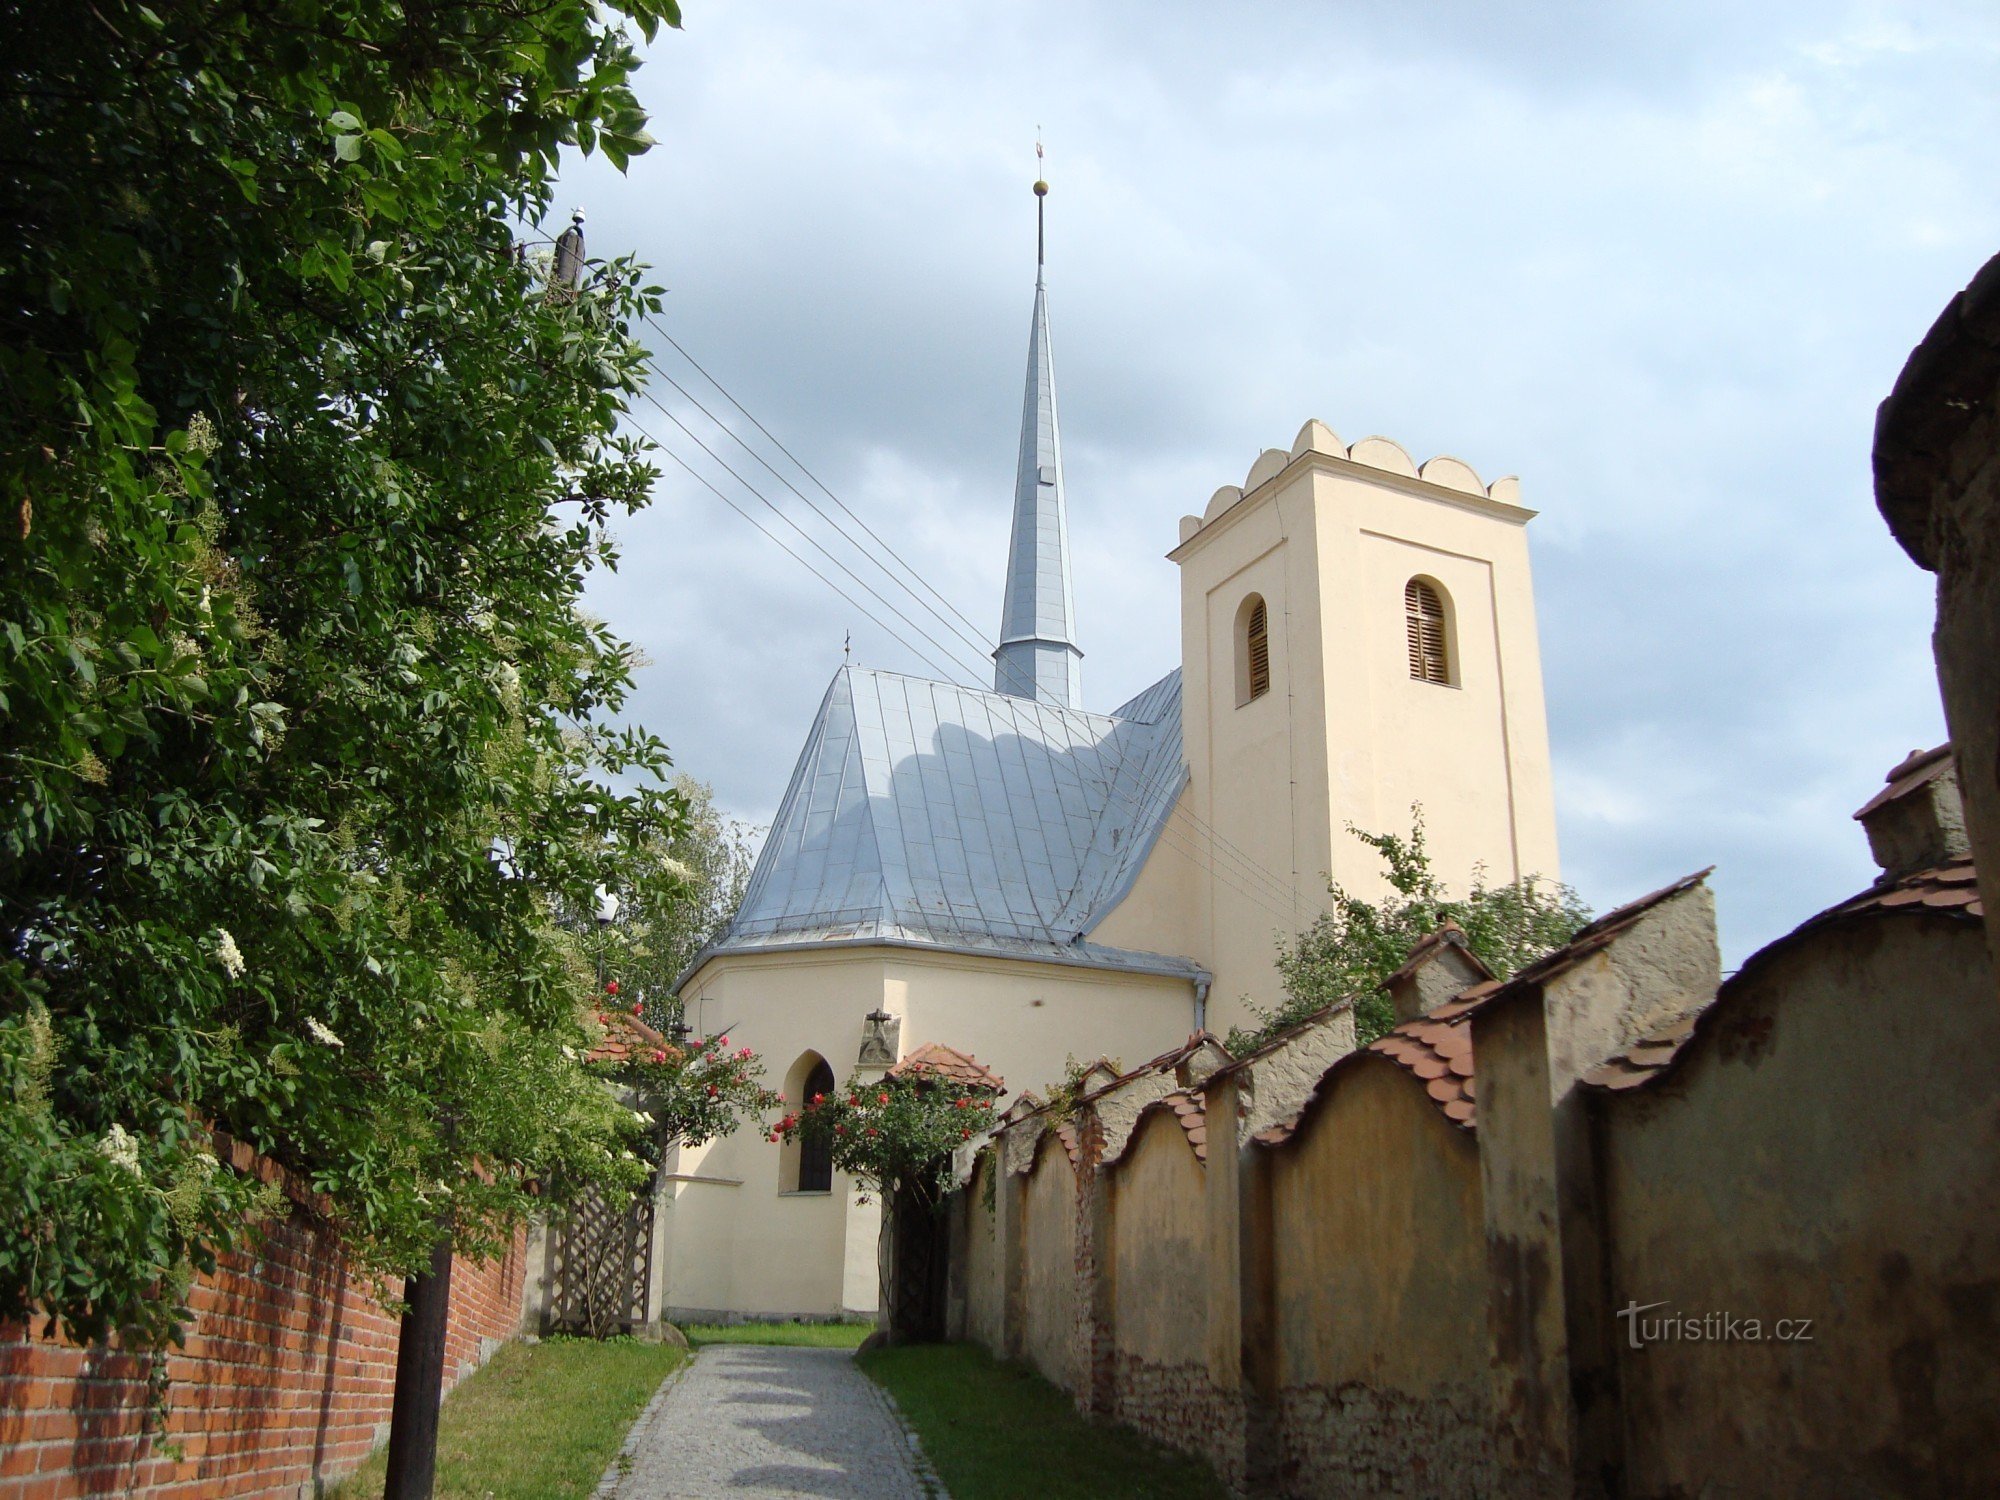 Slavonín - župnijska cerkev sv. Andreja - Foto: Ulrych Mir.